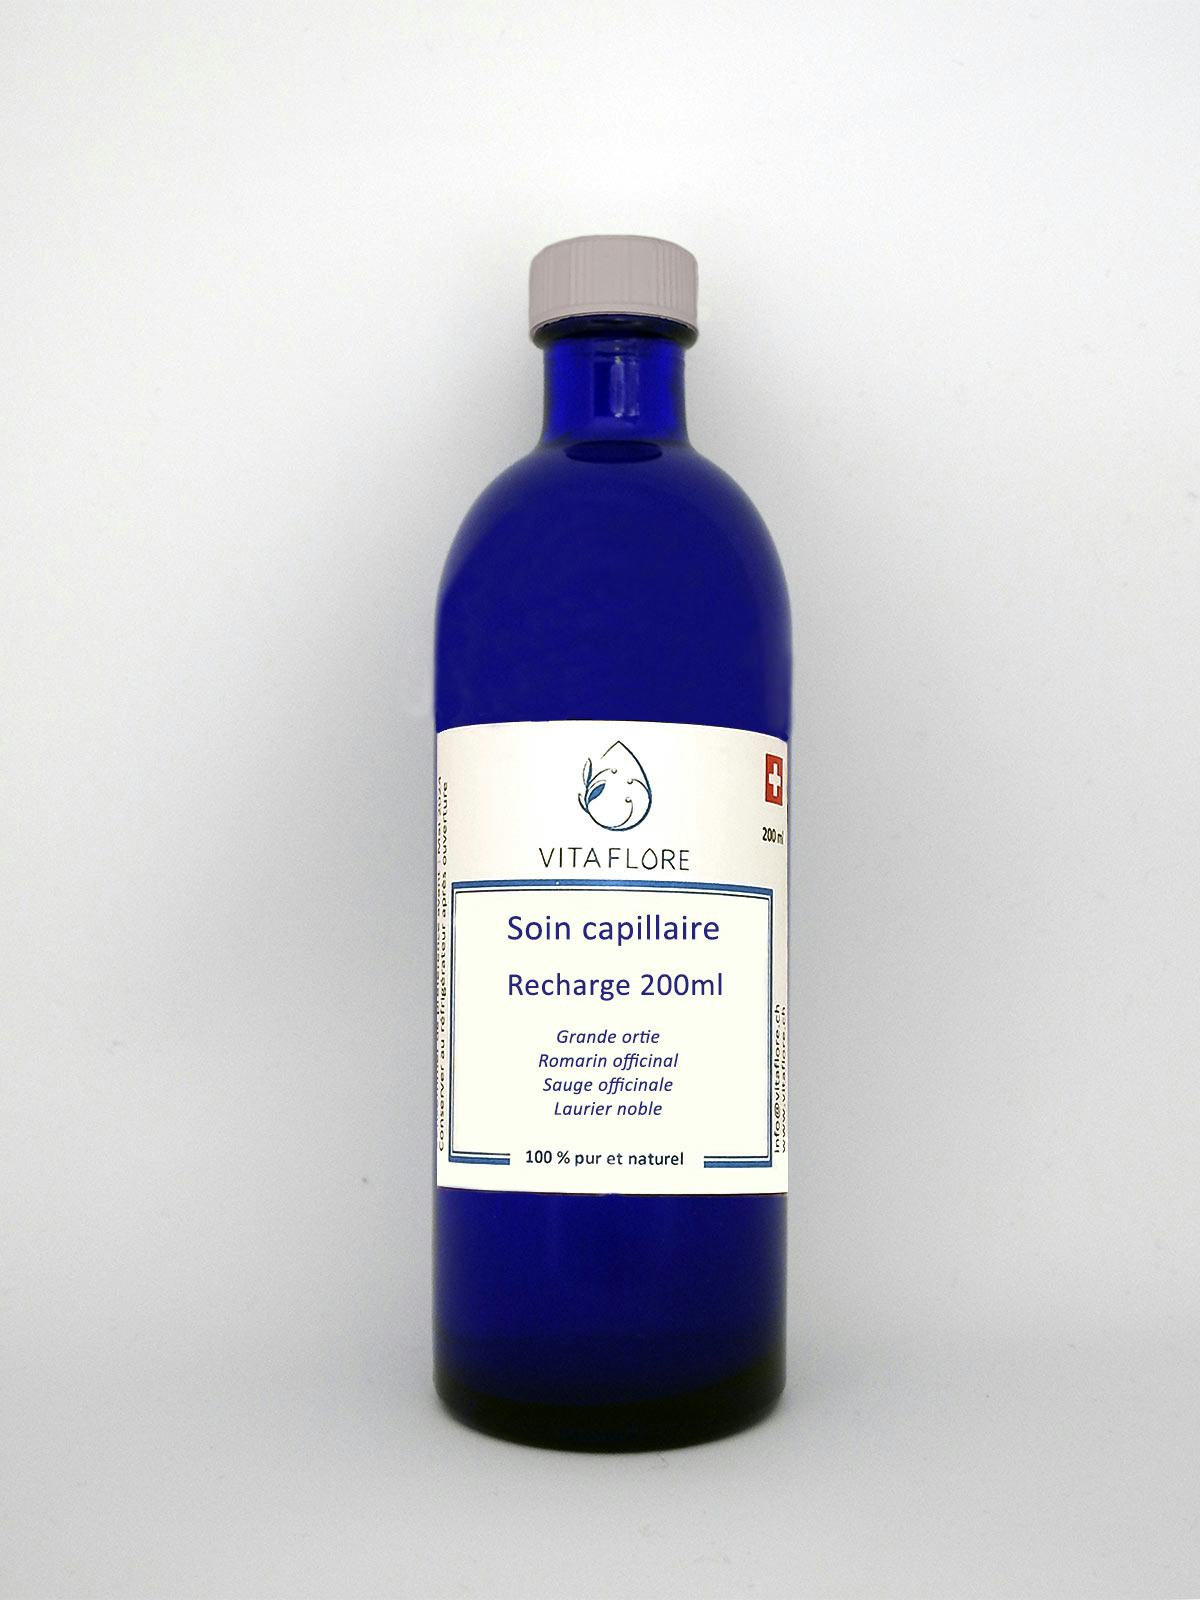 Synergie d’hydrolats – Soin capillaire – recharge 200ml, Vitaflore, Grimisuat, image 1 | Mimelis